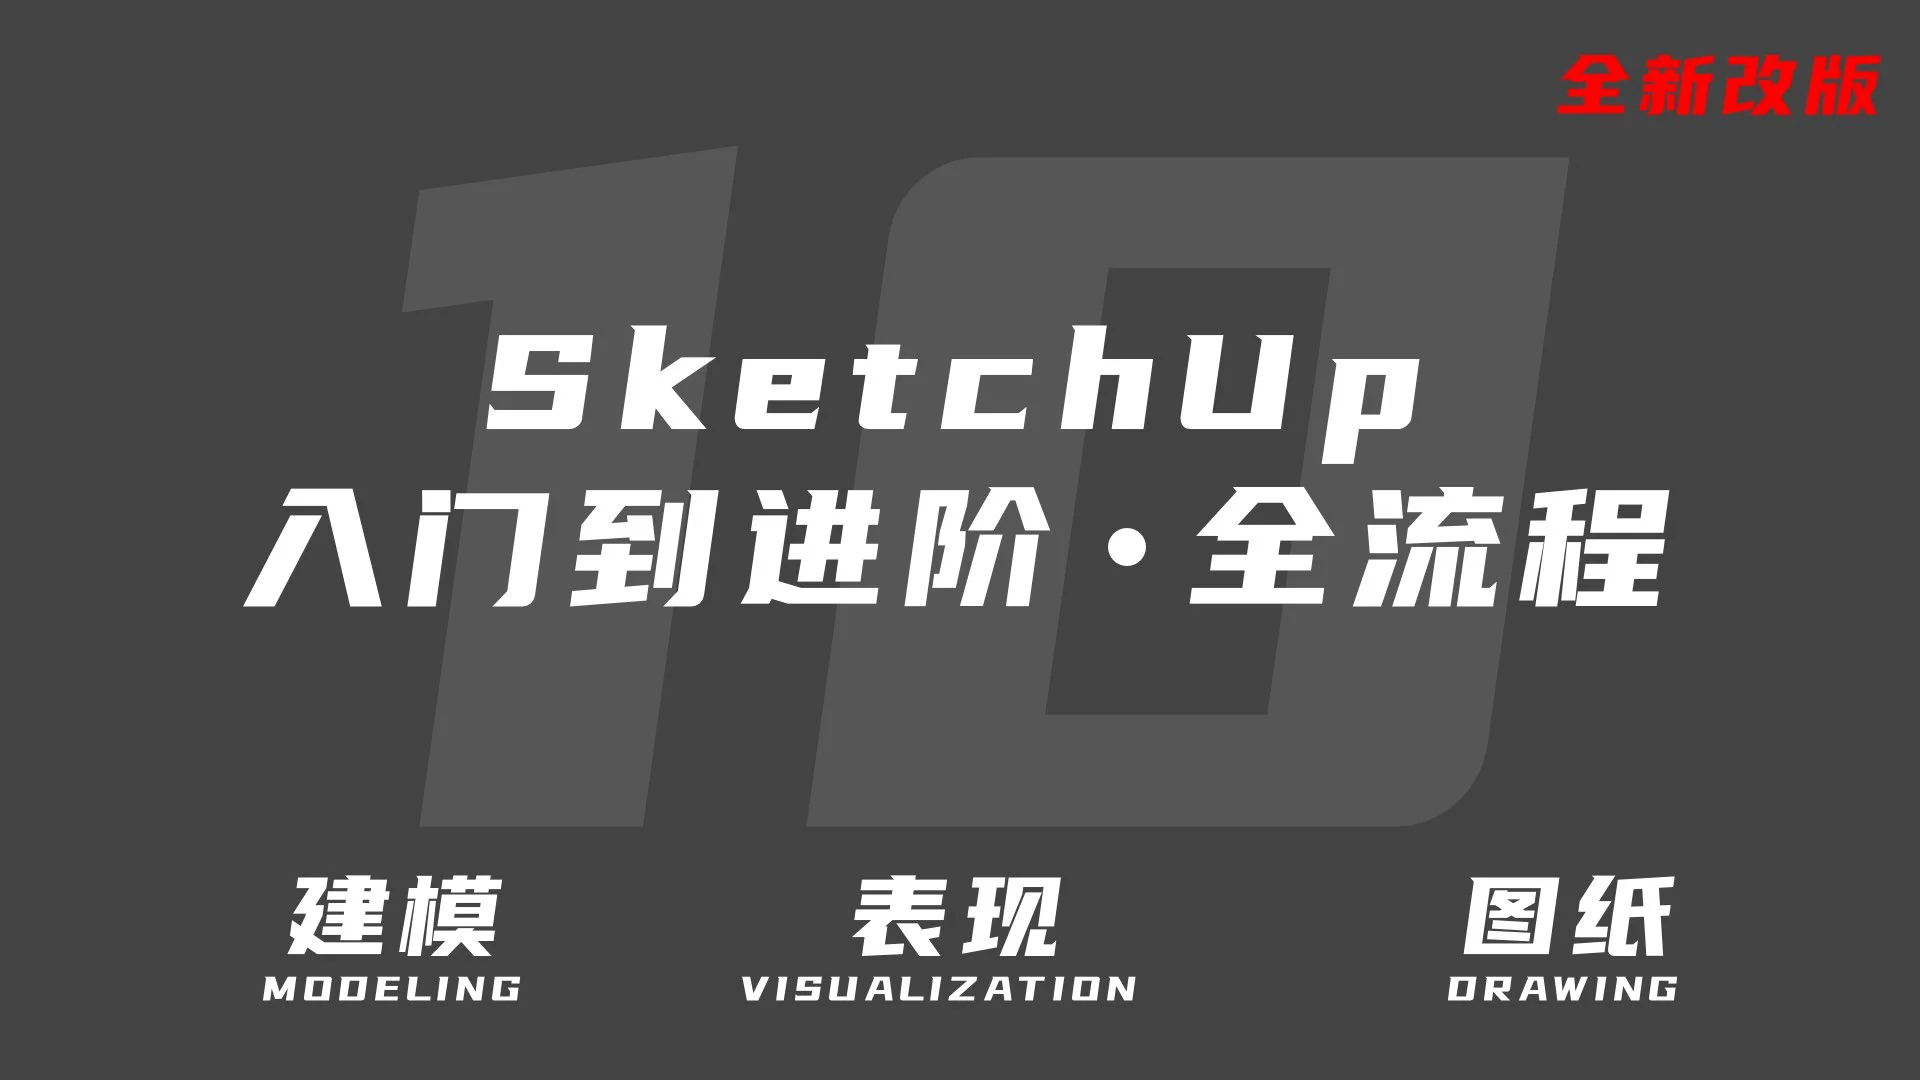 SketchUp从入门到进阶·全流程(第10期)备份 2